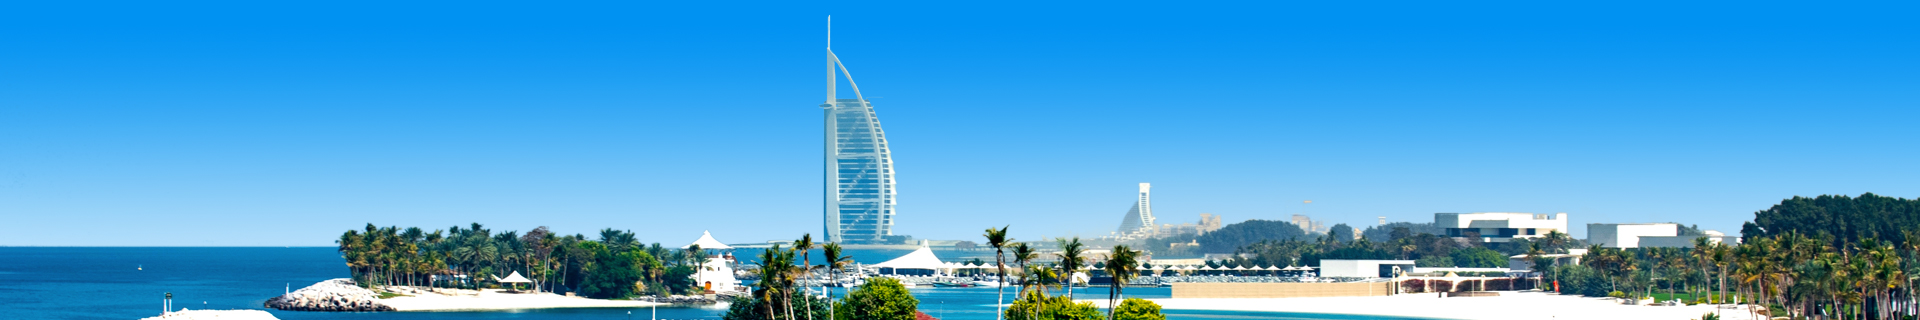 Uitzicht op het hoogste hotel in Dubai in de Verenigde Arabische Emiraten